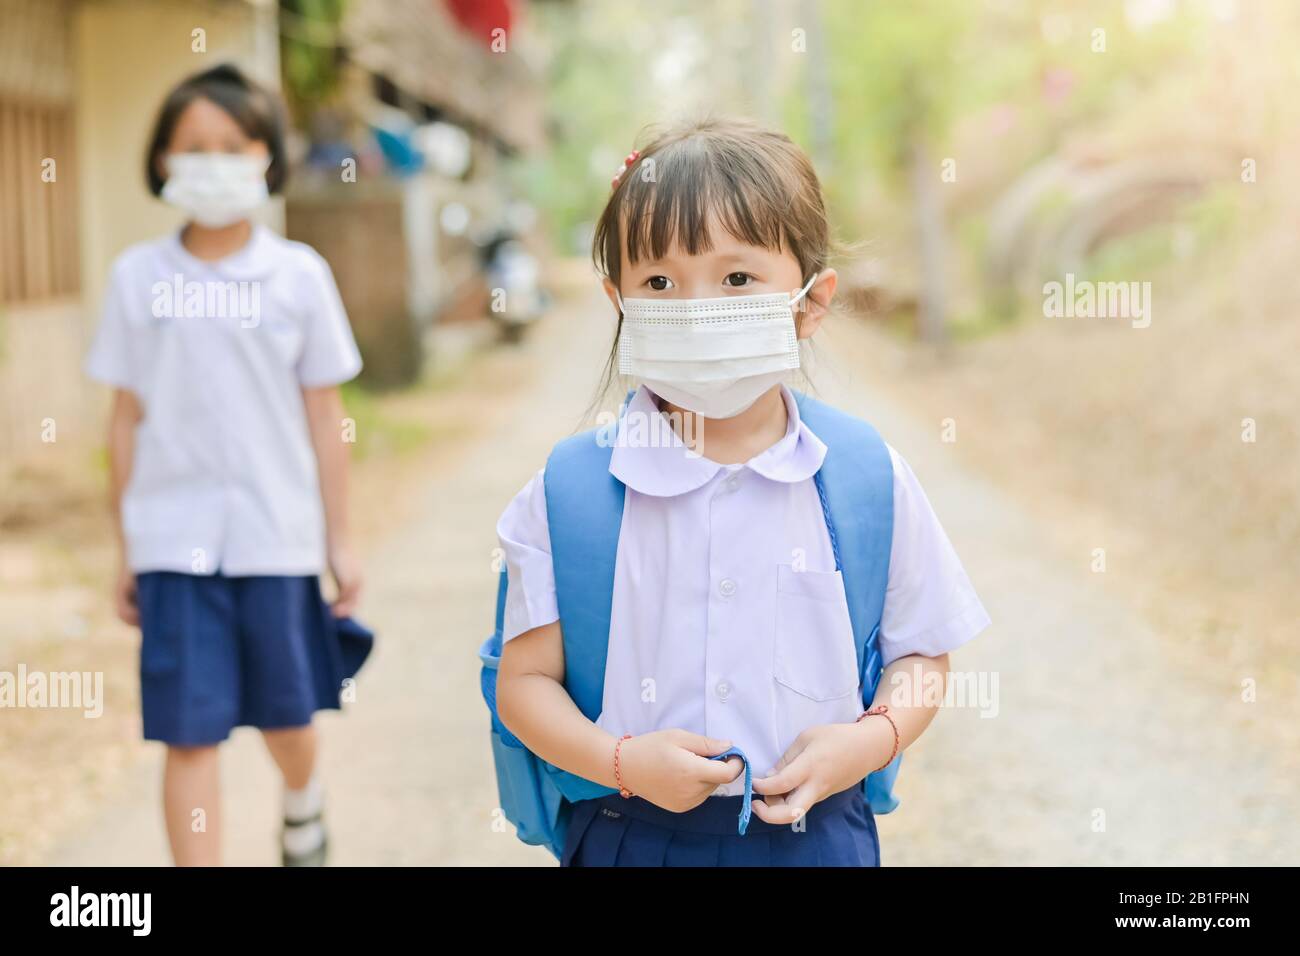 Kleine Schulmädchen hat Maske schützen sich vor Corona-Virus COVID-19 Wenn Kind zur Schule geht, Student mit einer Maske an der Nase für Sicherheit im Freien Stockfoto